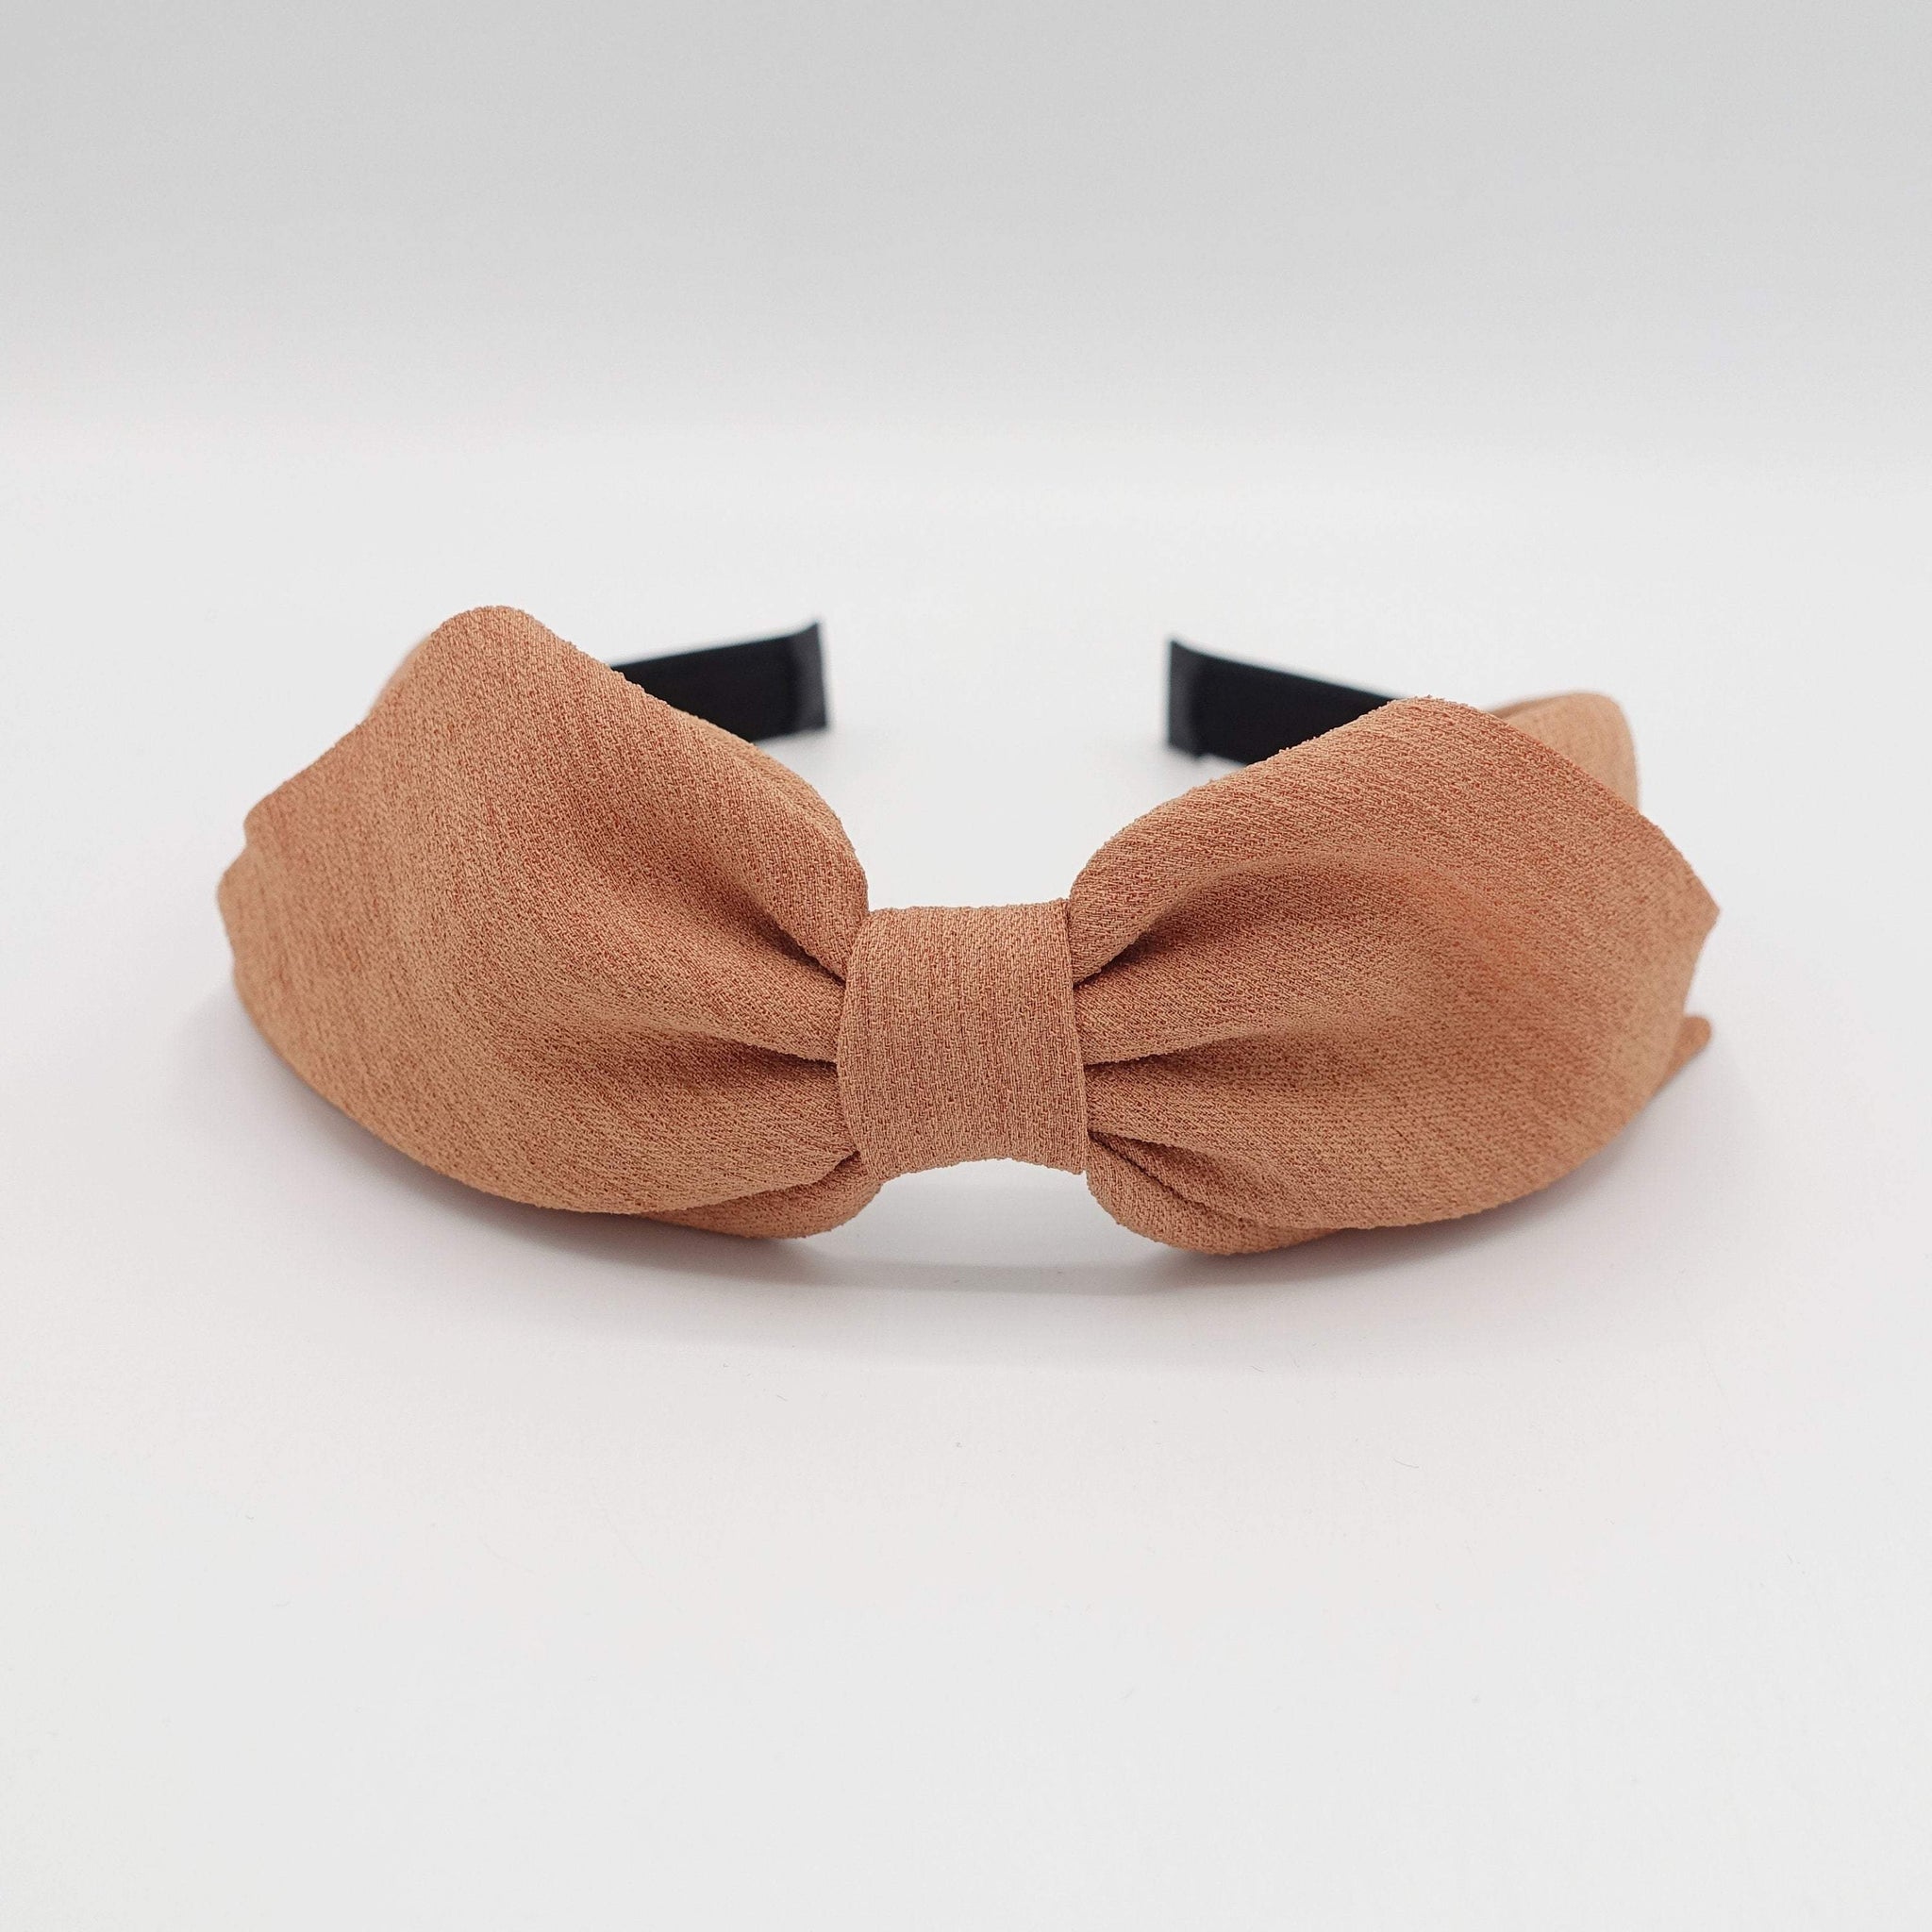 VeryShine Headband Apricot folded hair bow headband for women